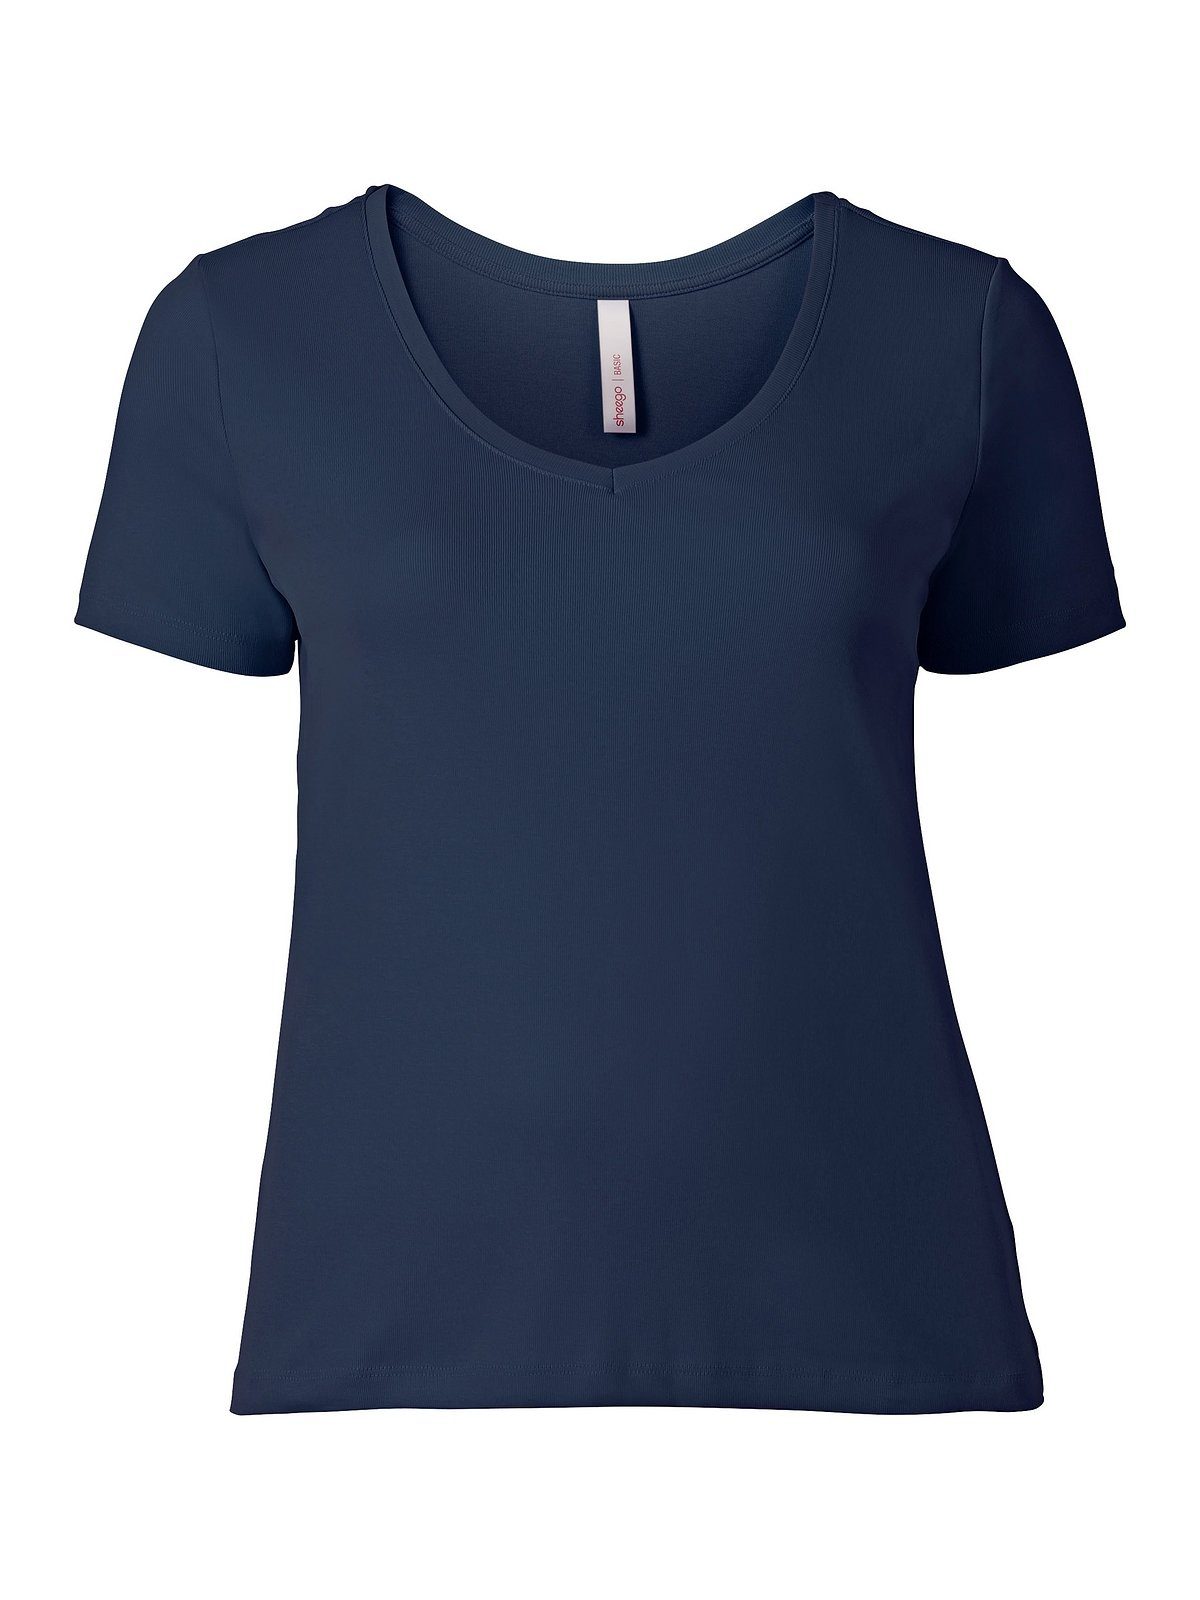 Sheego T-Shirt Große Größen aus Qualität fein gerippter marine